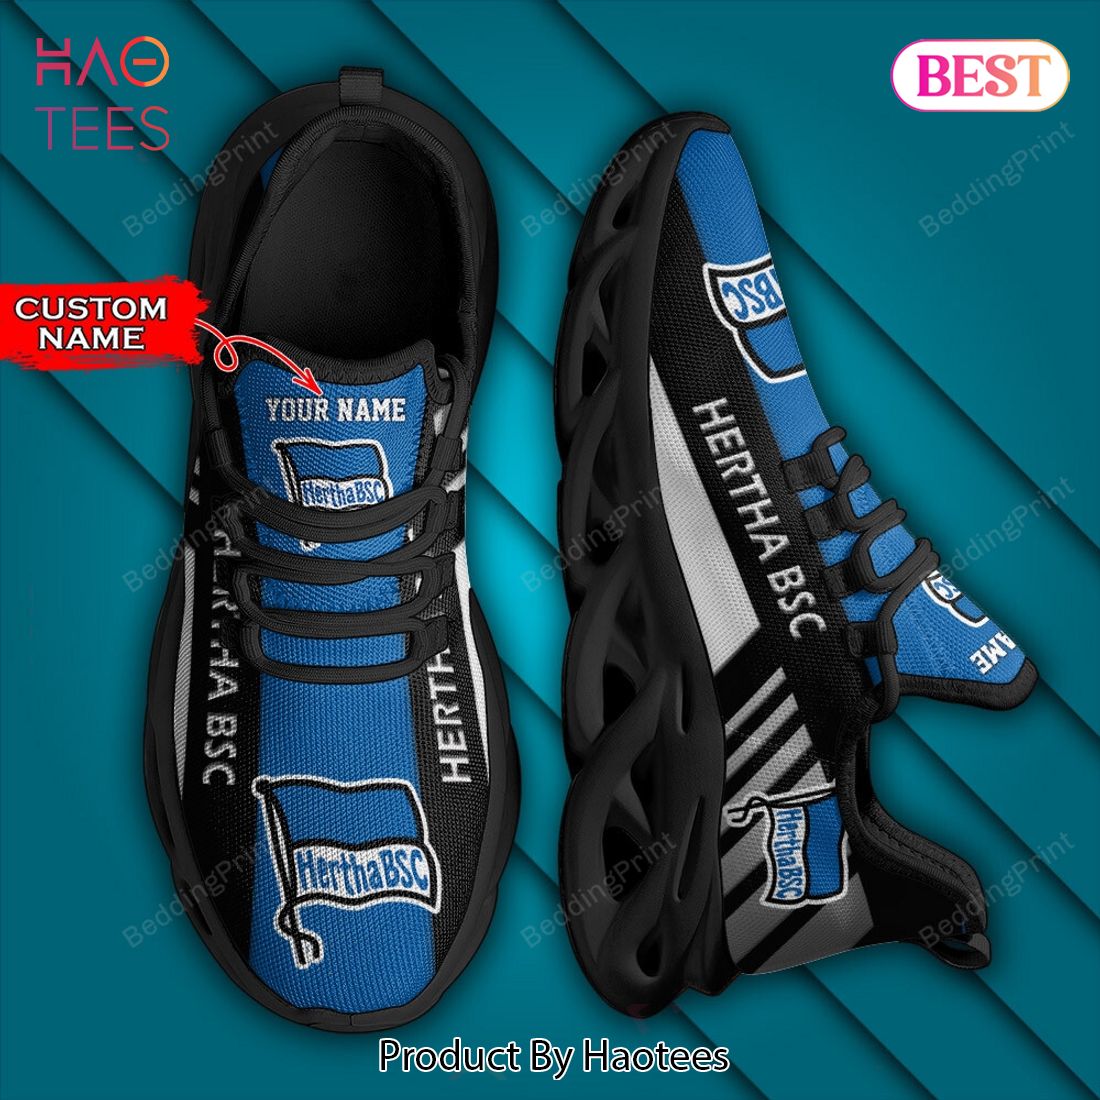 Bundesliga Hertha BSC Personalized Custom Name Max Soul Shoes